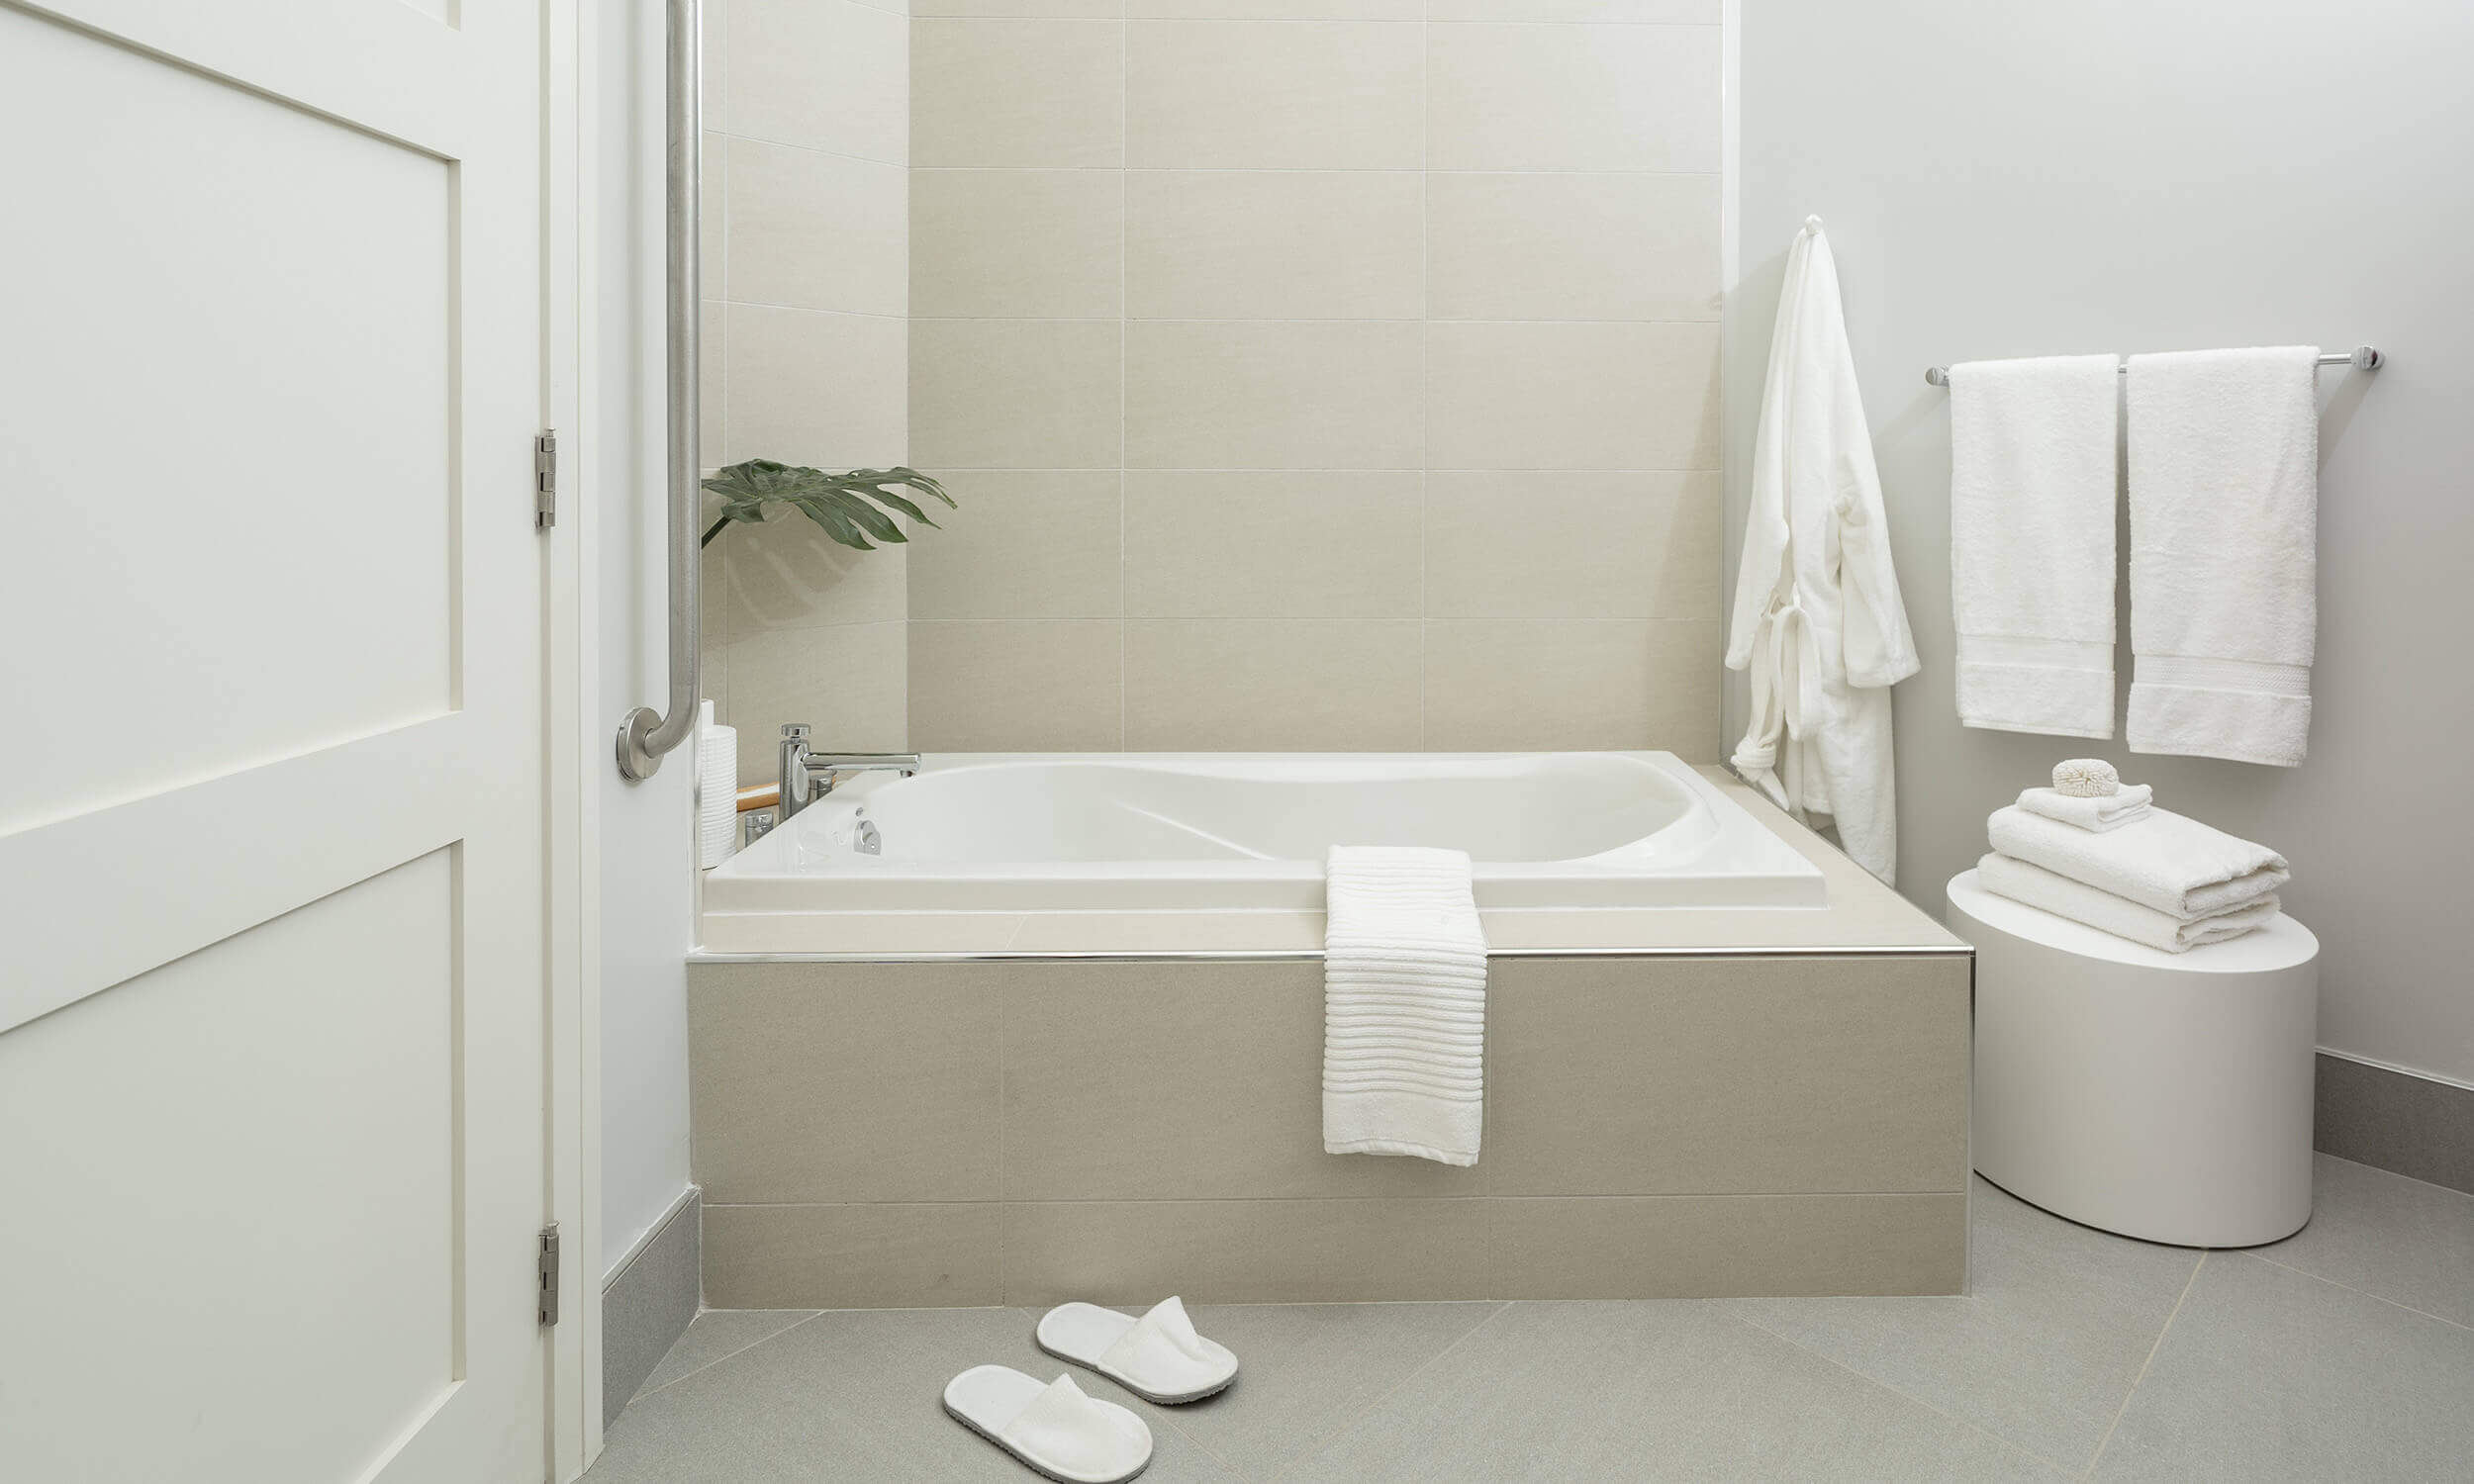 Grey-toned bathroom with jacuzzi